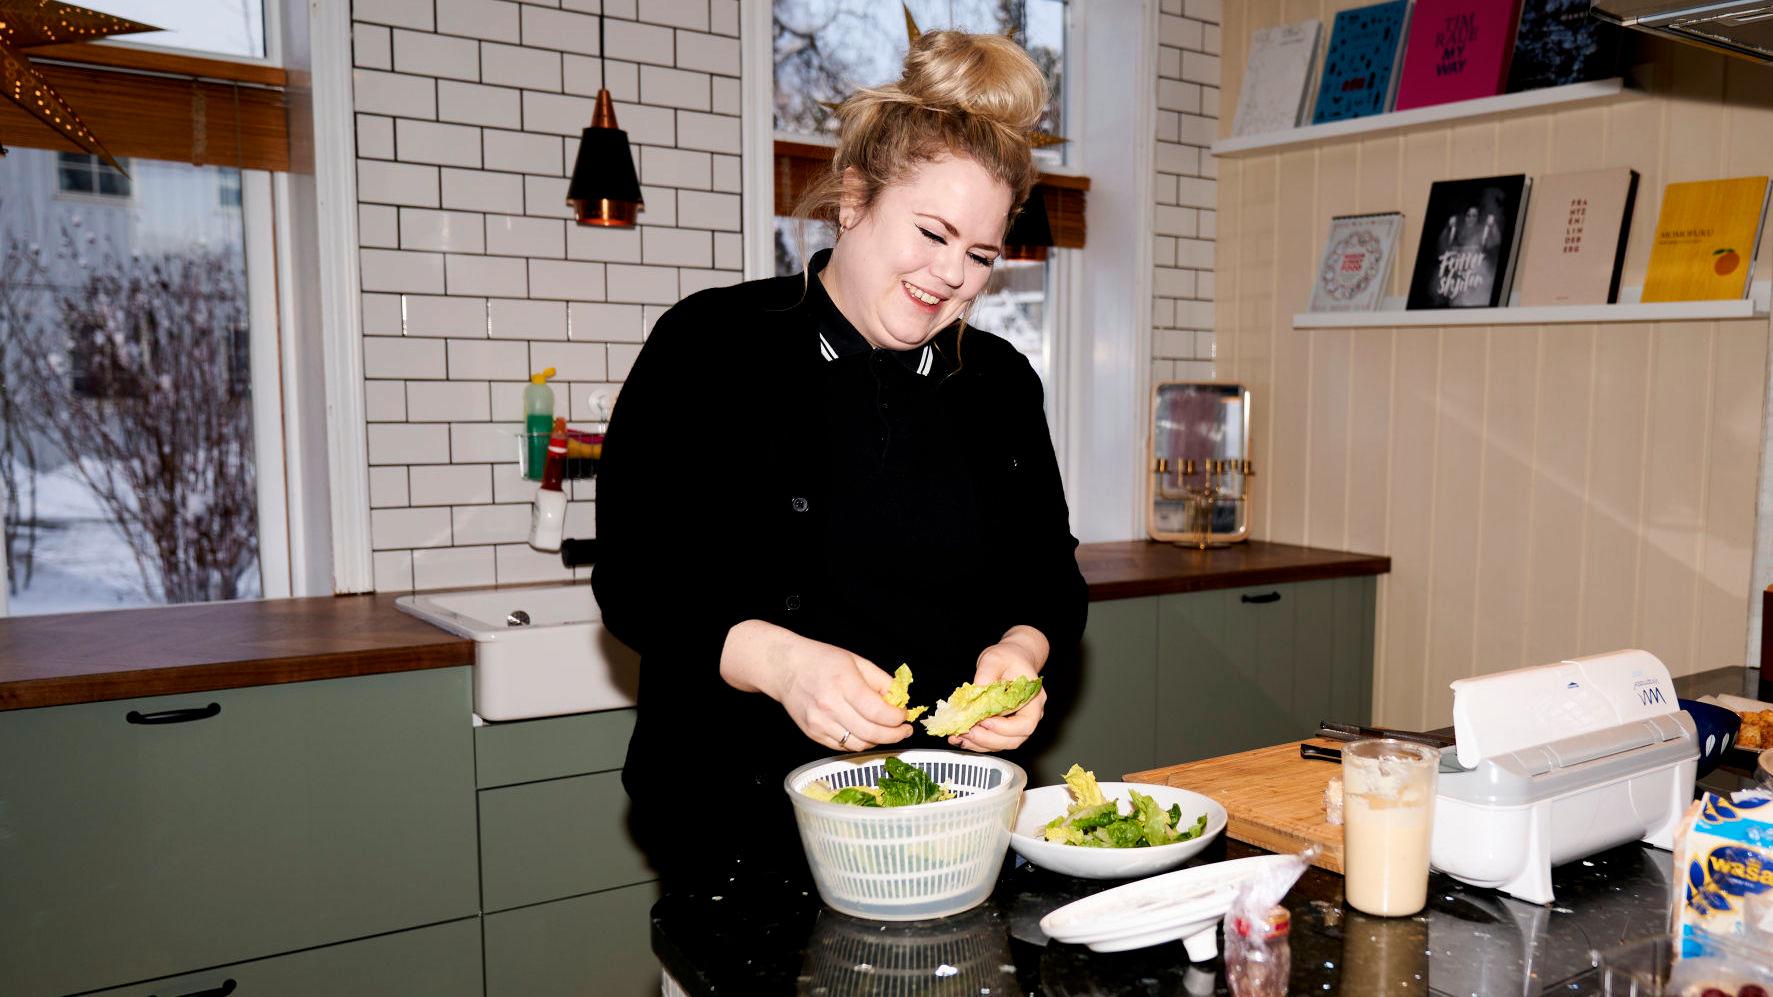 SLYNGER VEKK VANNET: – Salaten må være tørr, er den ikke det blir det liggende ekkelt vann og dressingrester i bunnen. Den må også være frisk og crunchy, sier Fagerhøi. Foto: Ole Martin Wold/VG